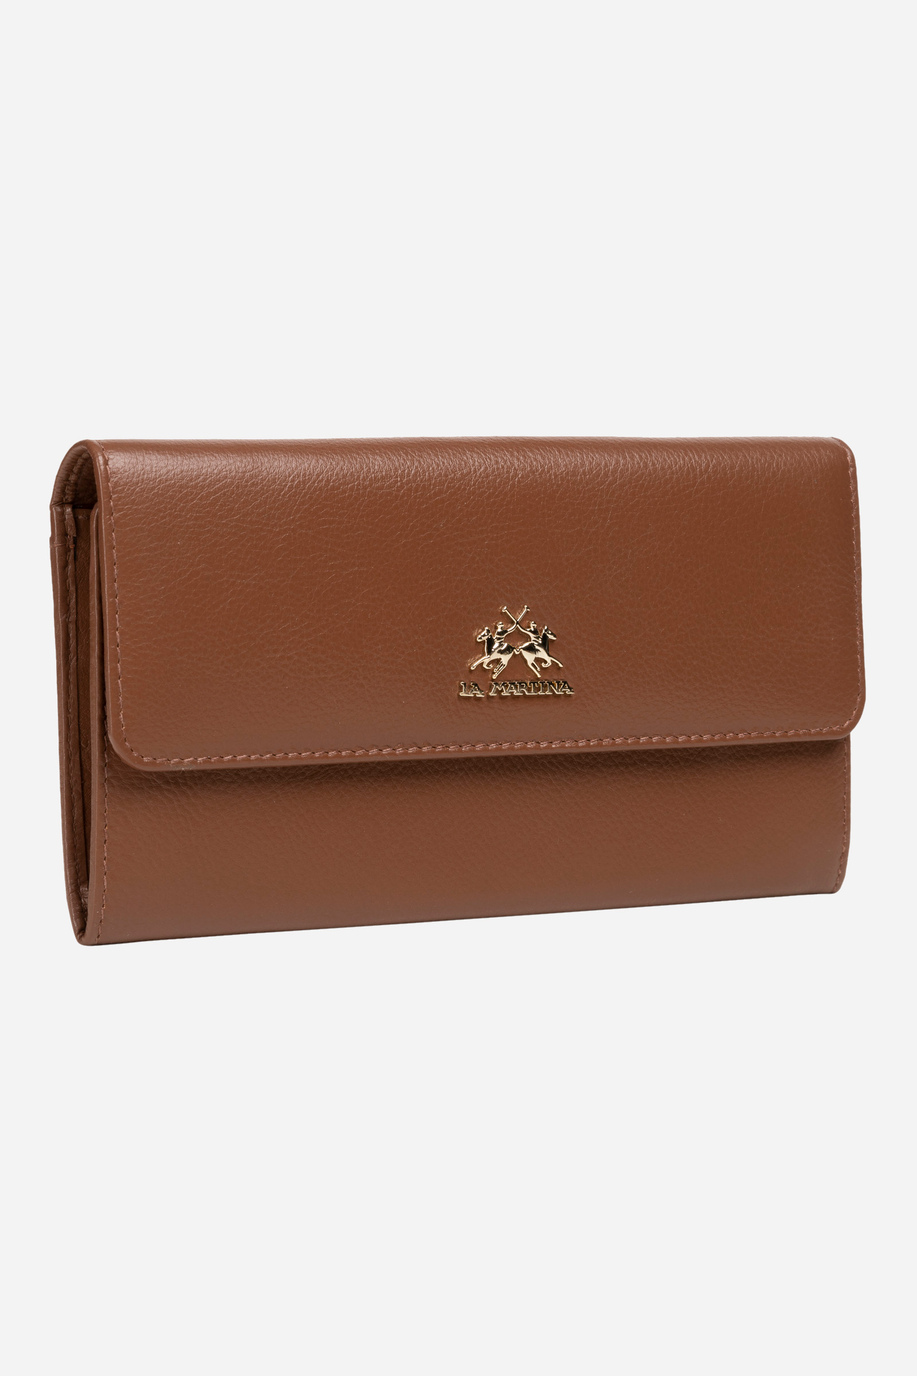 Calfskin wallet - Heritage - Monogrammed gifts for her | La Martina - Official Online Shop